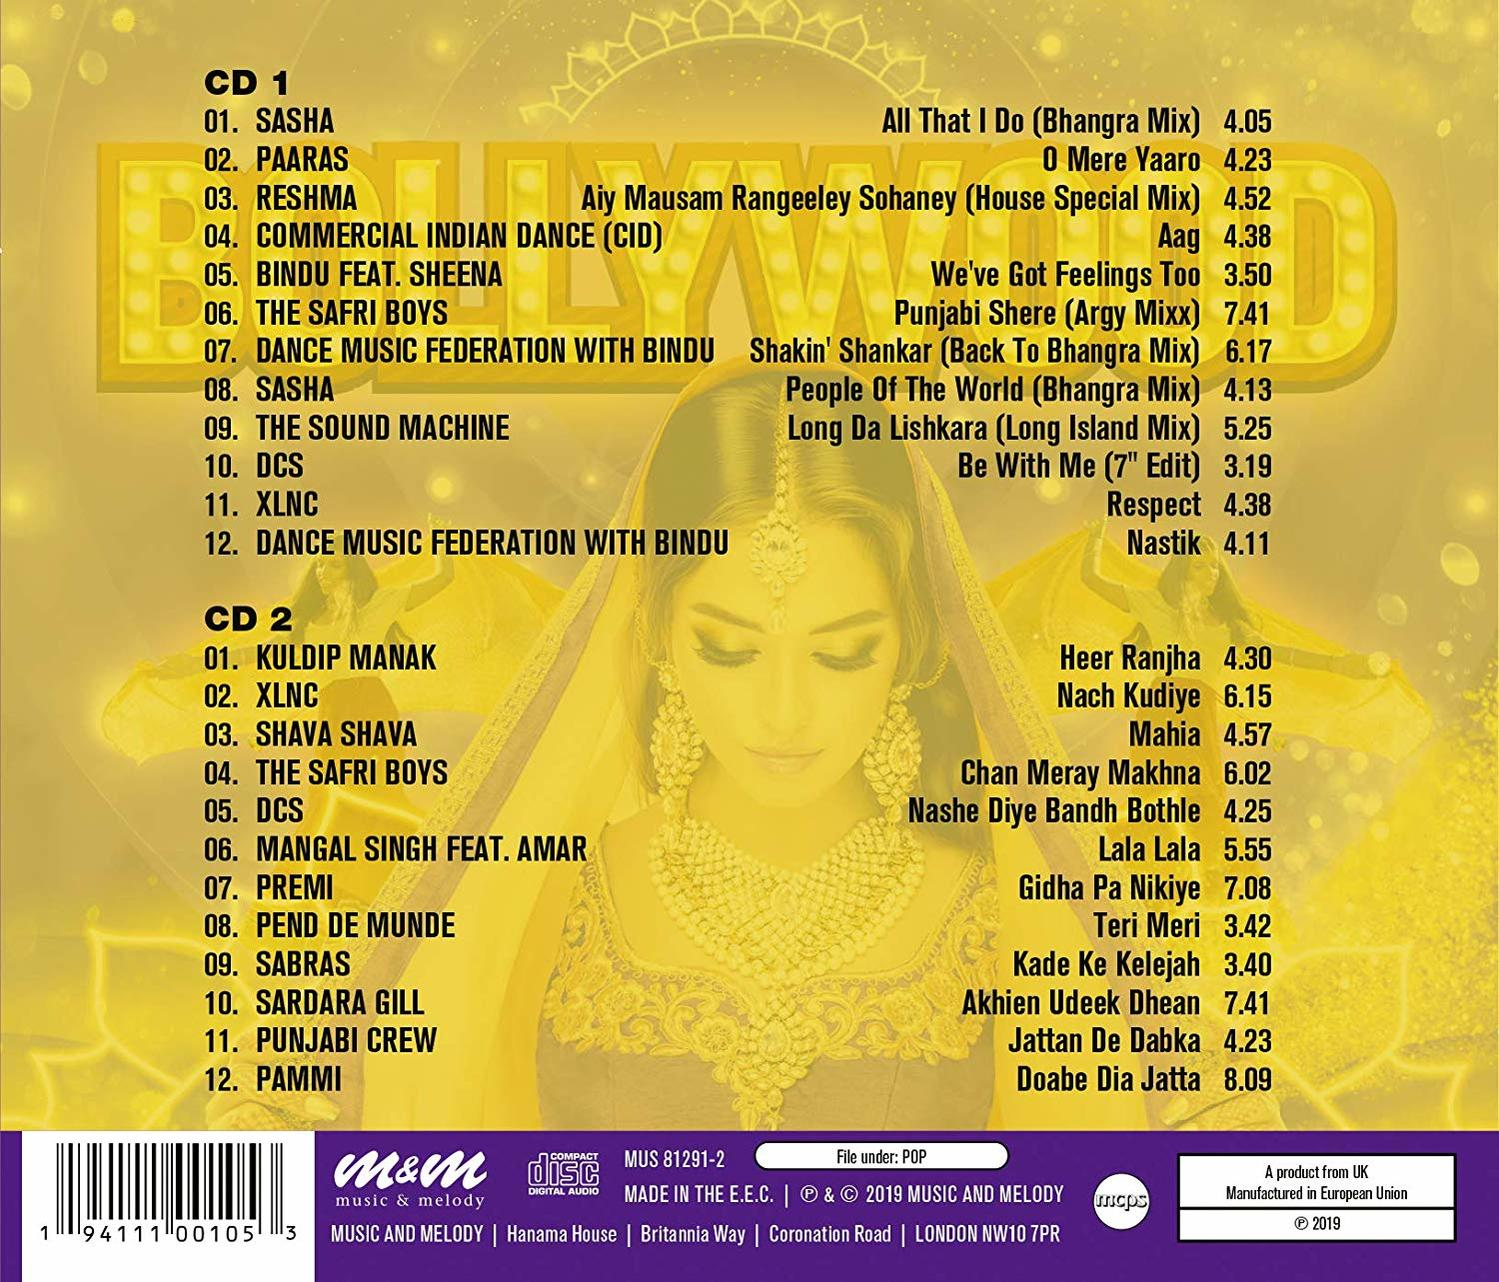 Bollywood Party - VARIOUS - (CD)